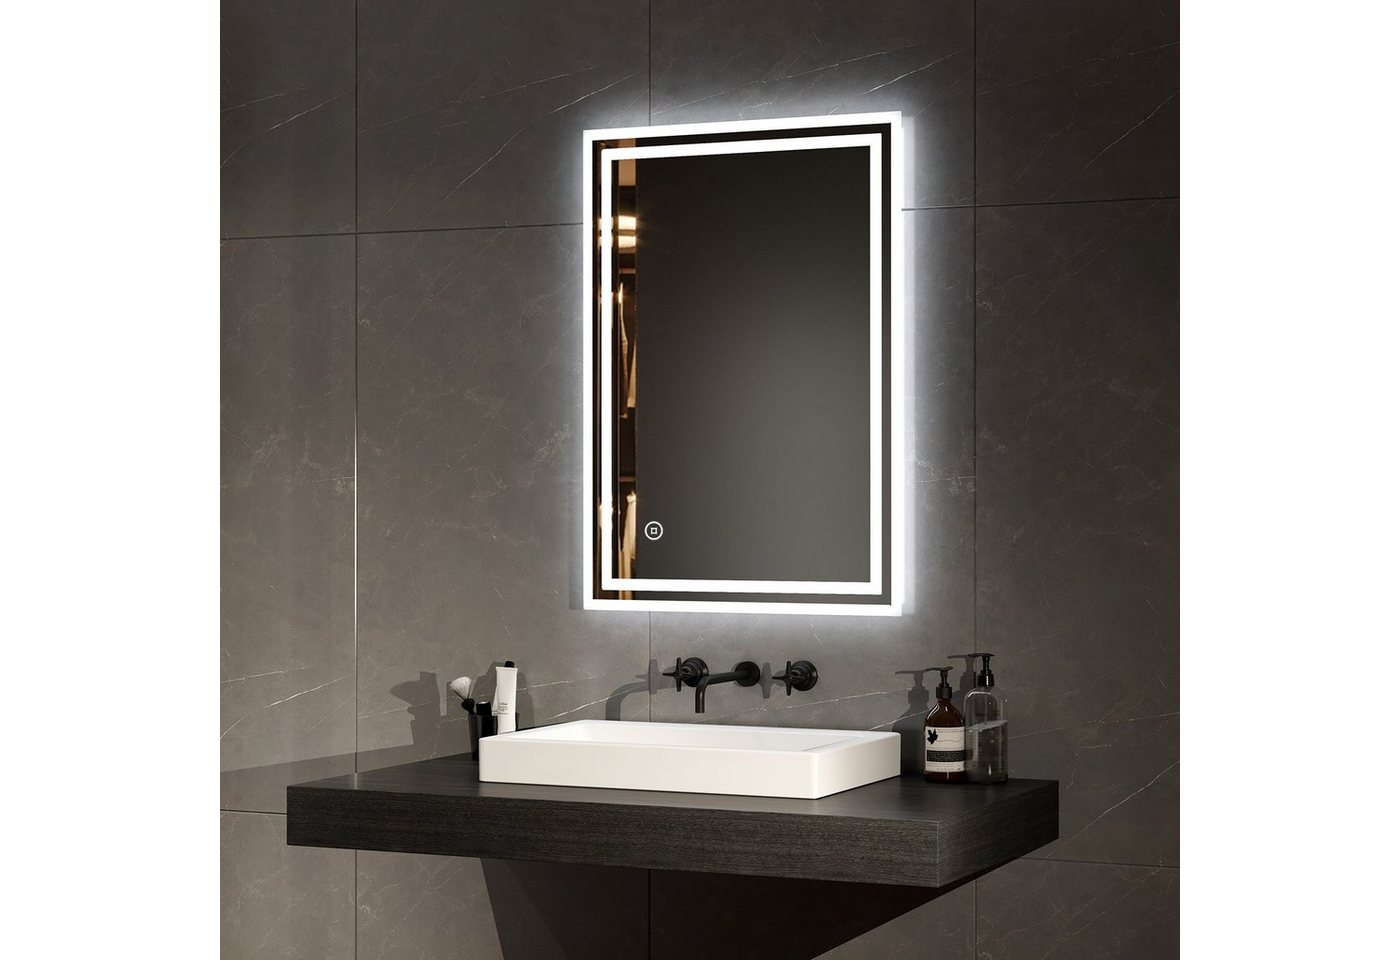 EMKE Badspiegel EMKE Badspiegel LED Badezimmerspiegel mit Beleuchtung, Touch-schalter und Beschlagfrei Modell 4 von EMKE